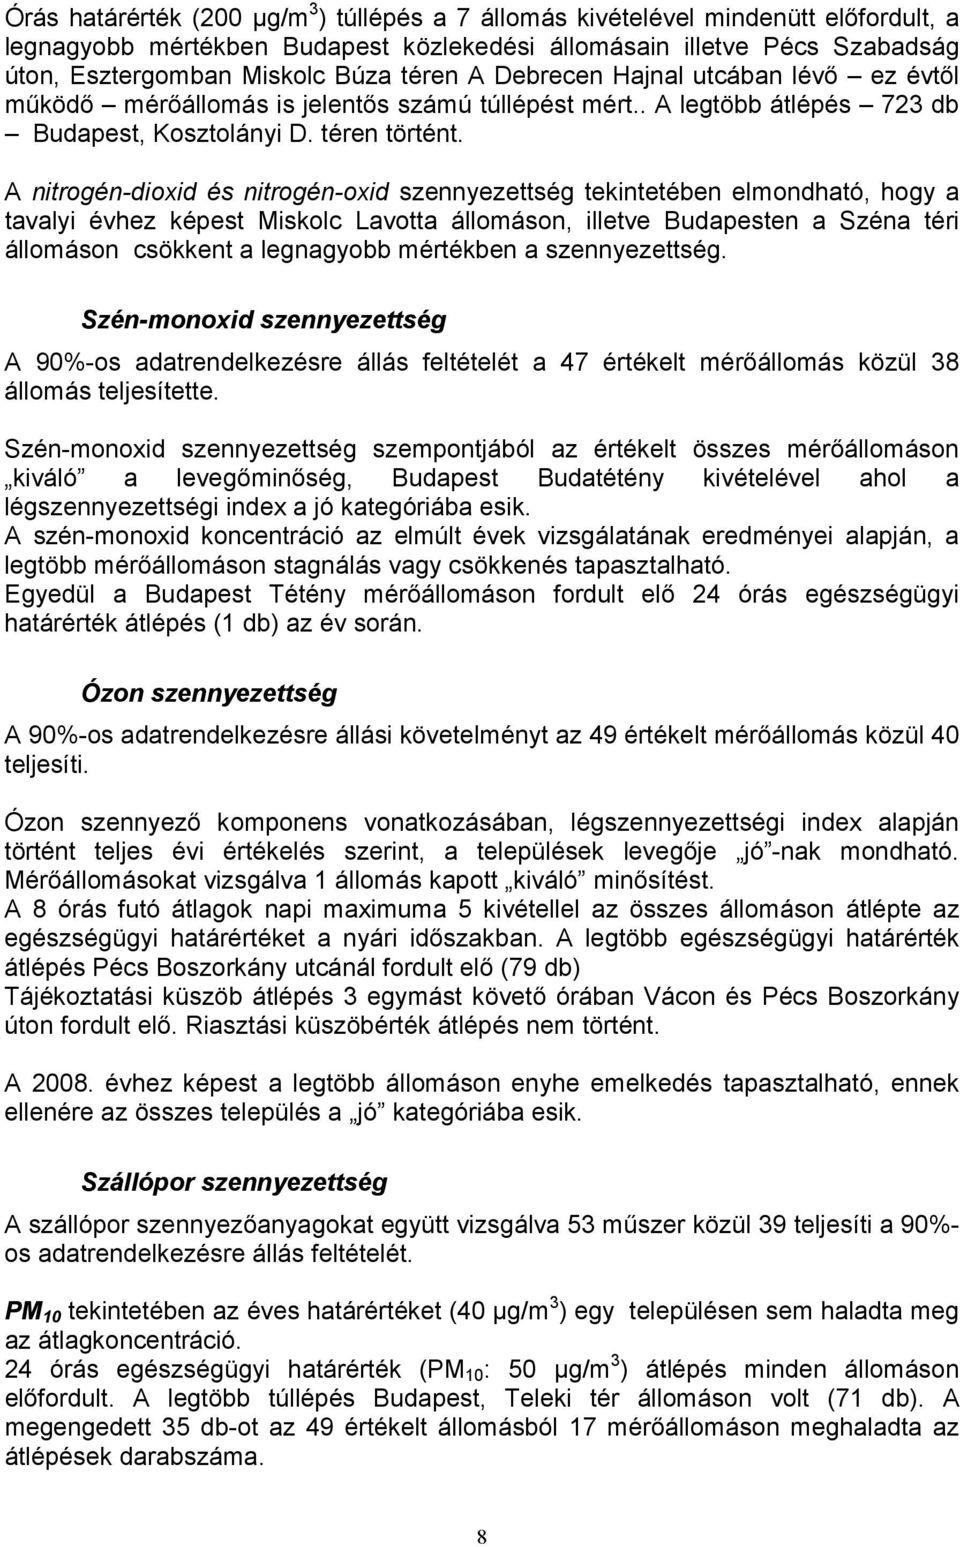 A nitrogén-dioxid és nitrogén-oxid szennyezettség tekintetében elmondható, hogy a tavalyi évhez képest Miskolc Lavotta állomáson, illetve Budapesten a Széna téri állomáson csökkent a legnagyobb